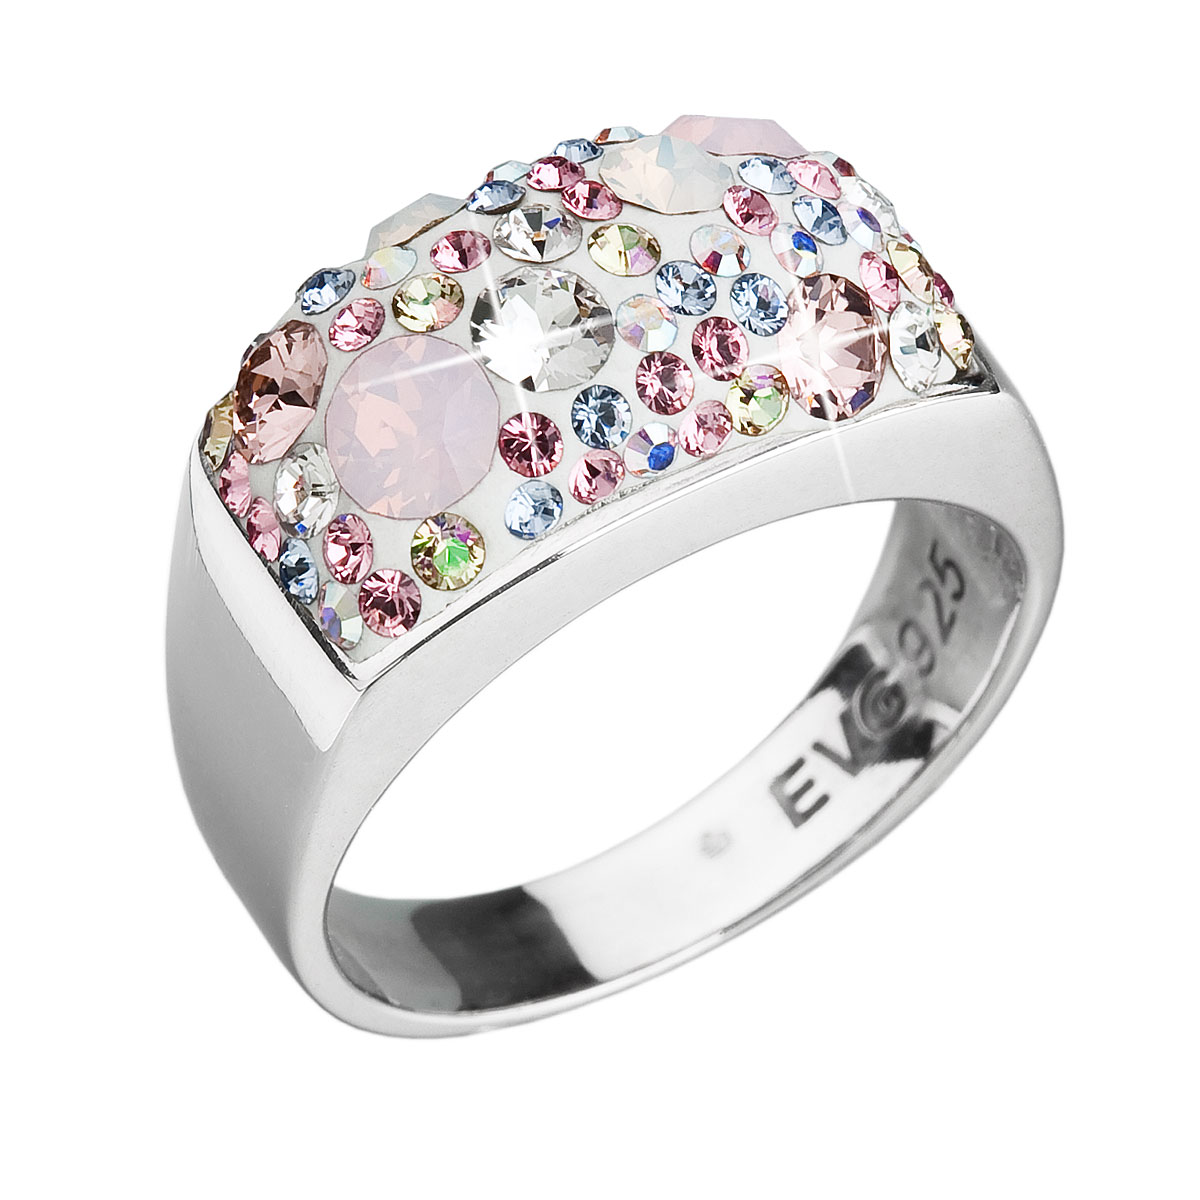 Evolution Group Stříbrný prsten s krystaly Swarovski růžový 35014.3 magic rose